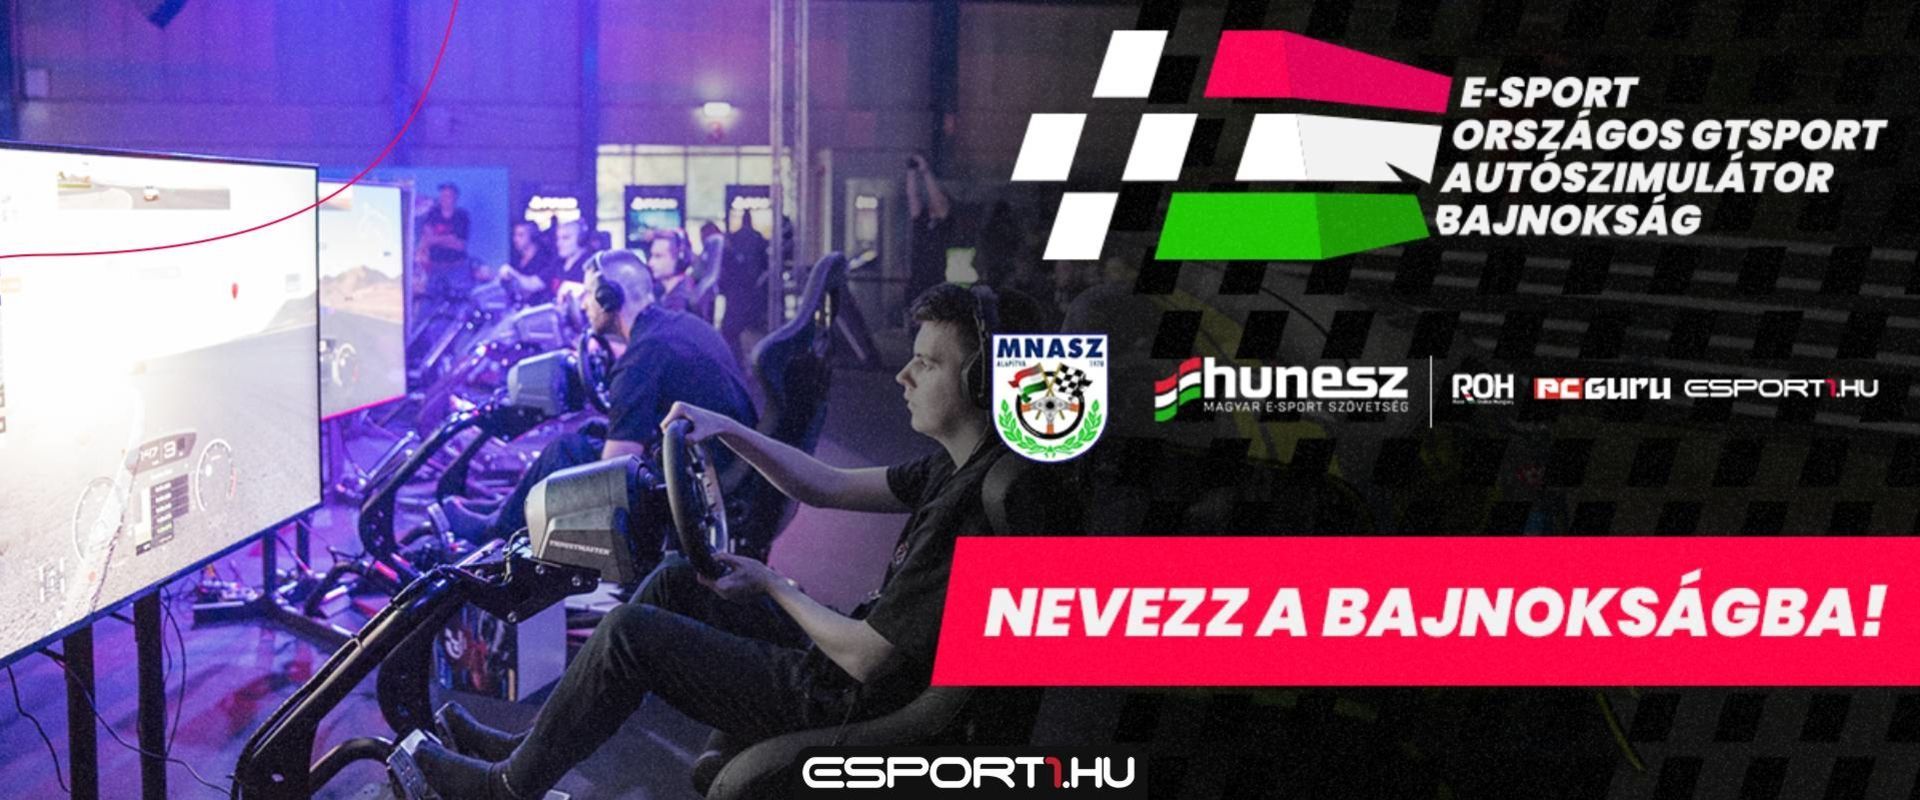 Ragadj kormányt és nevezz az MNASZ-HUNESZ E-sport Országos GTSport Autószimulátor Bajnokságra!